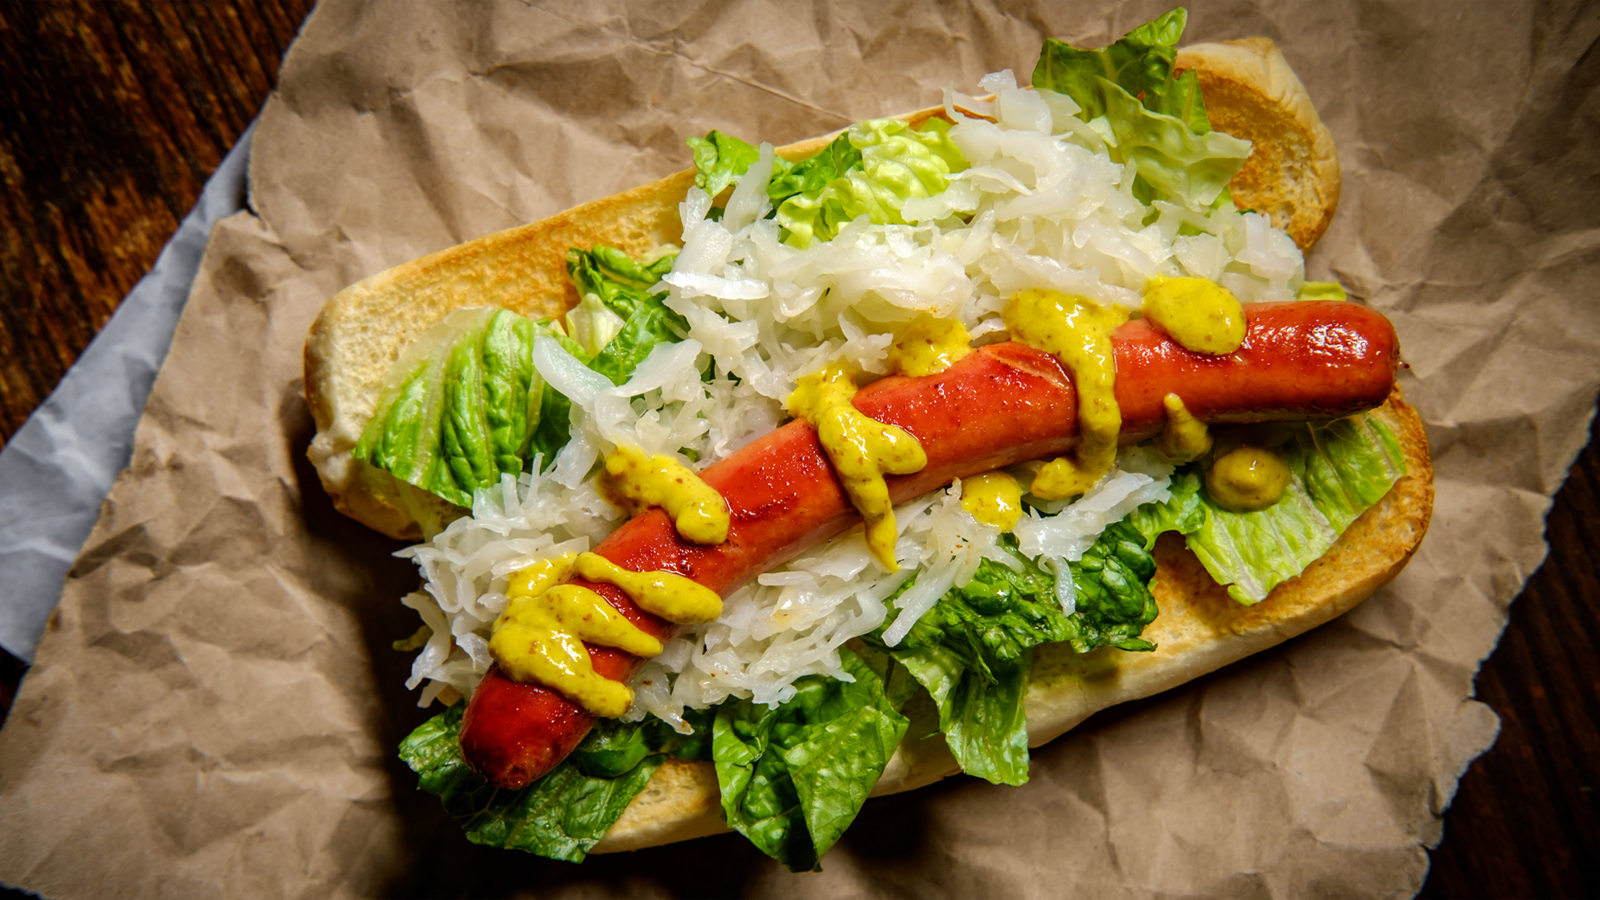 NYC-style Hot Dog